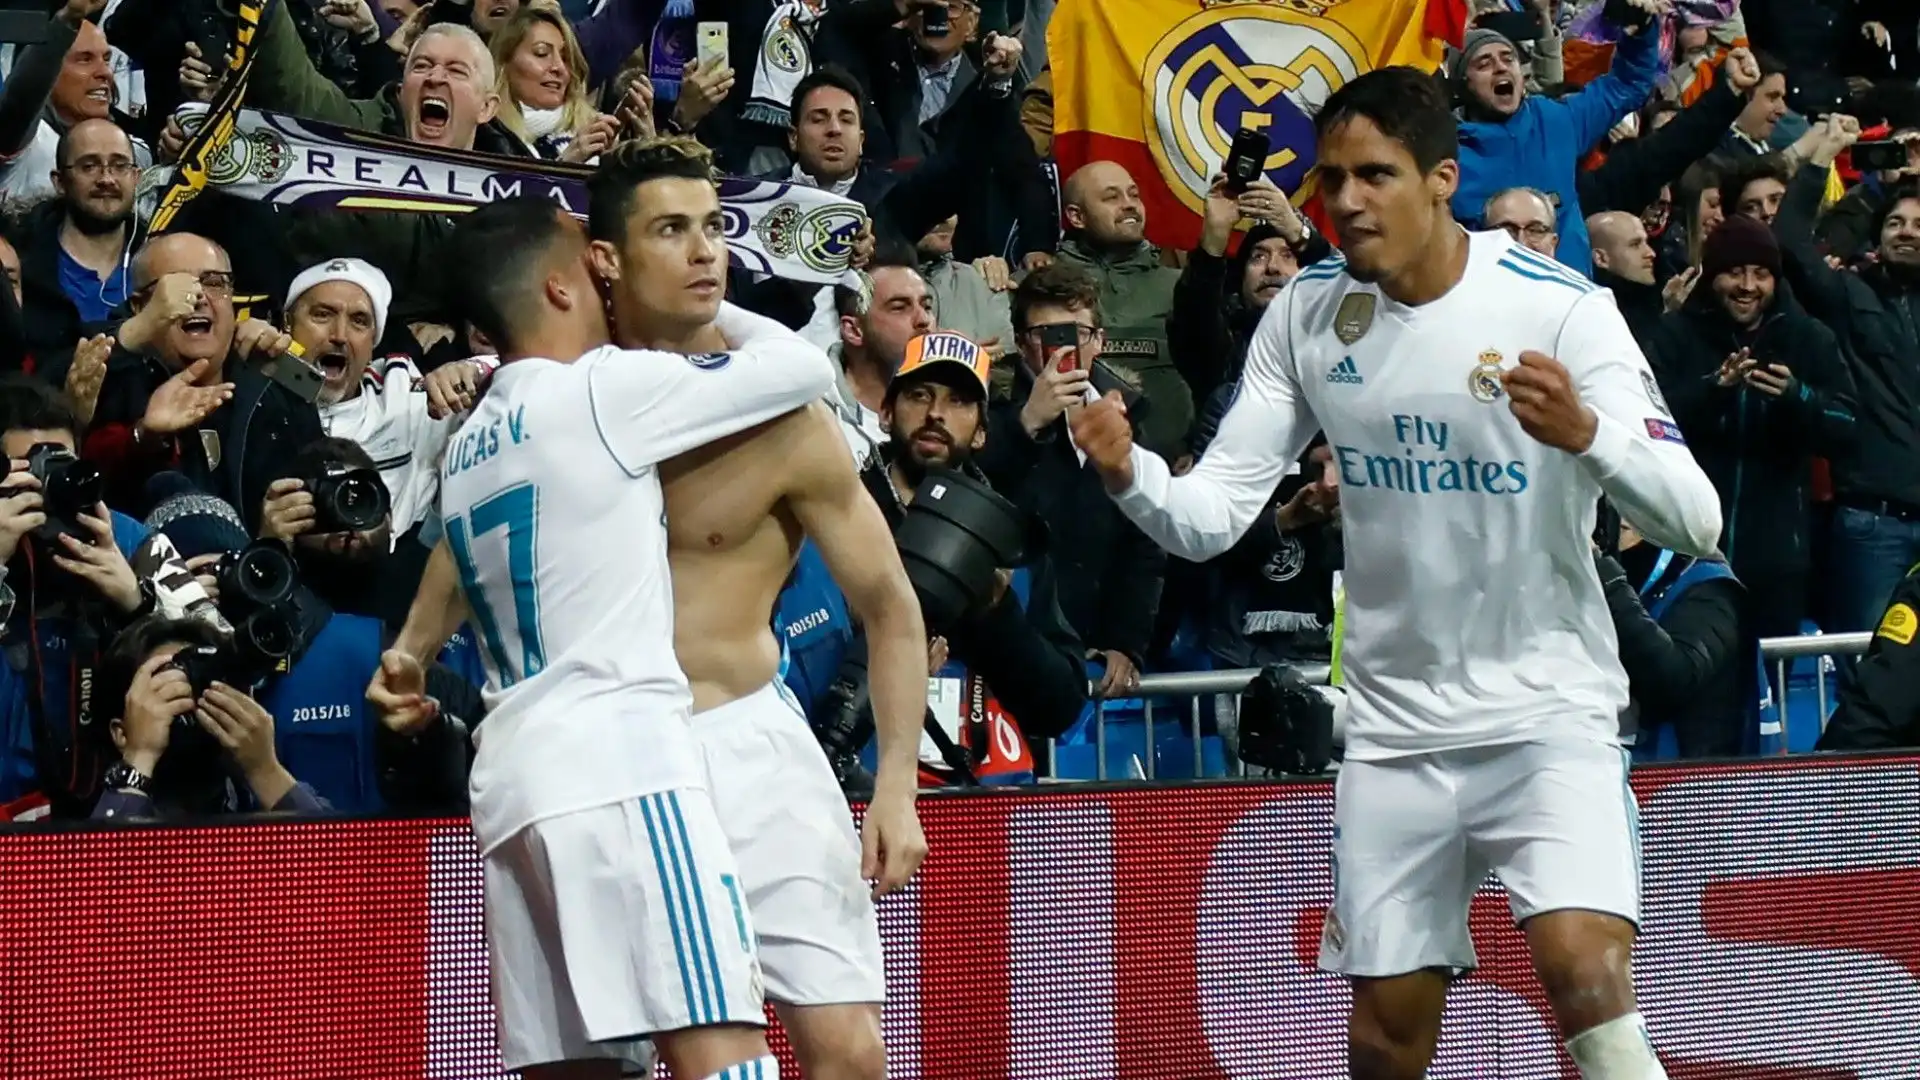 Clamoroso ritorno al Real Madrid: immagini